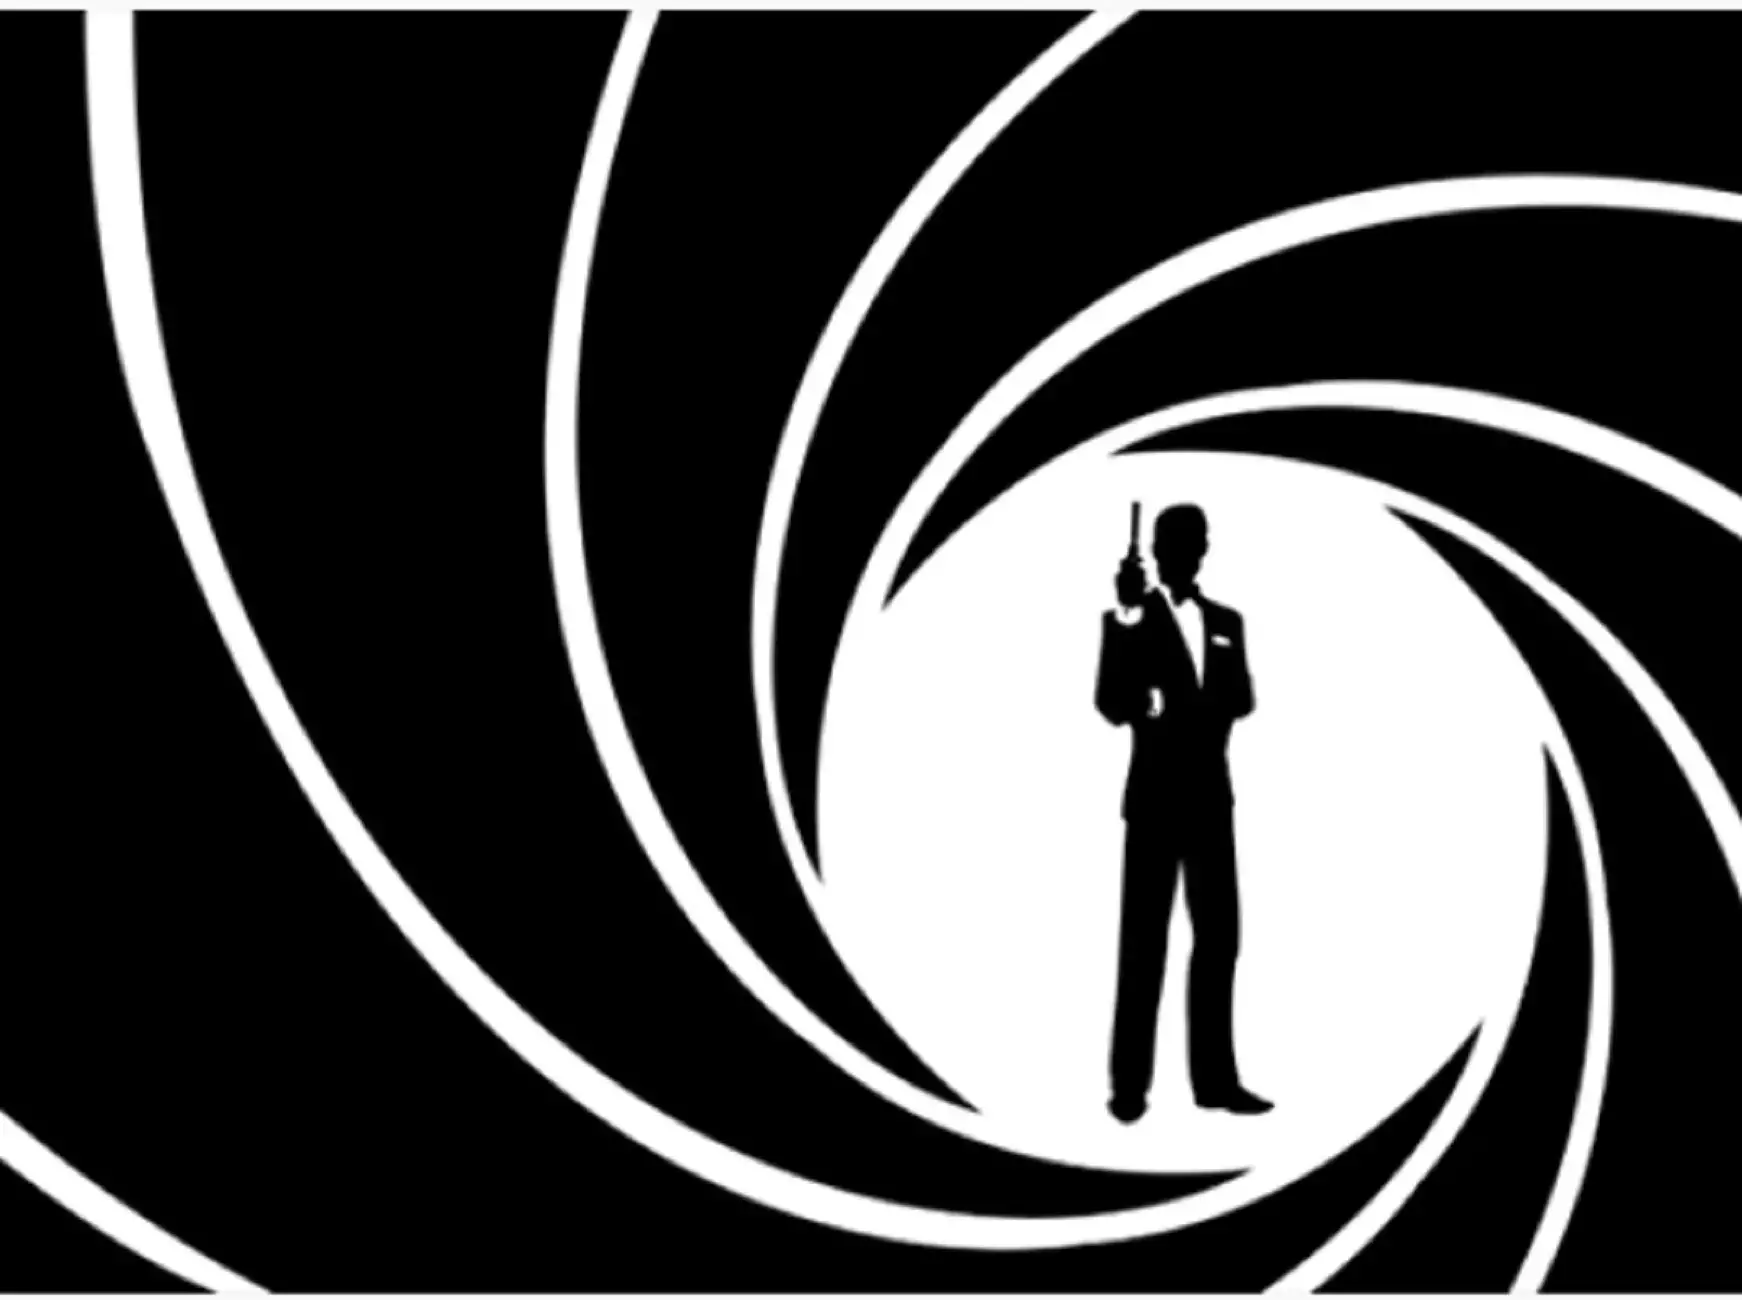 Η παραγωγός του Τζέιμς Μποντ λέει ότι η επόμενη ταινία θα «επανεφεύρει» τον 007